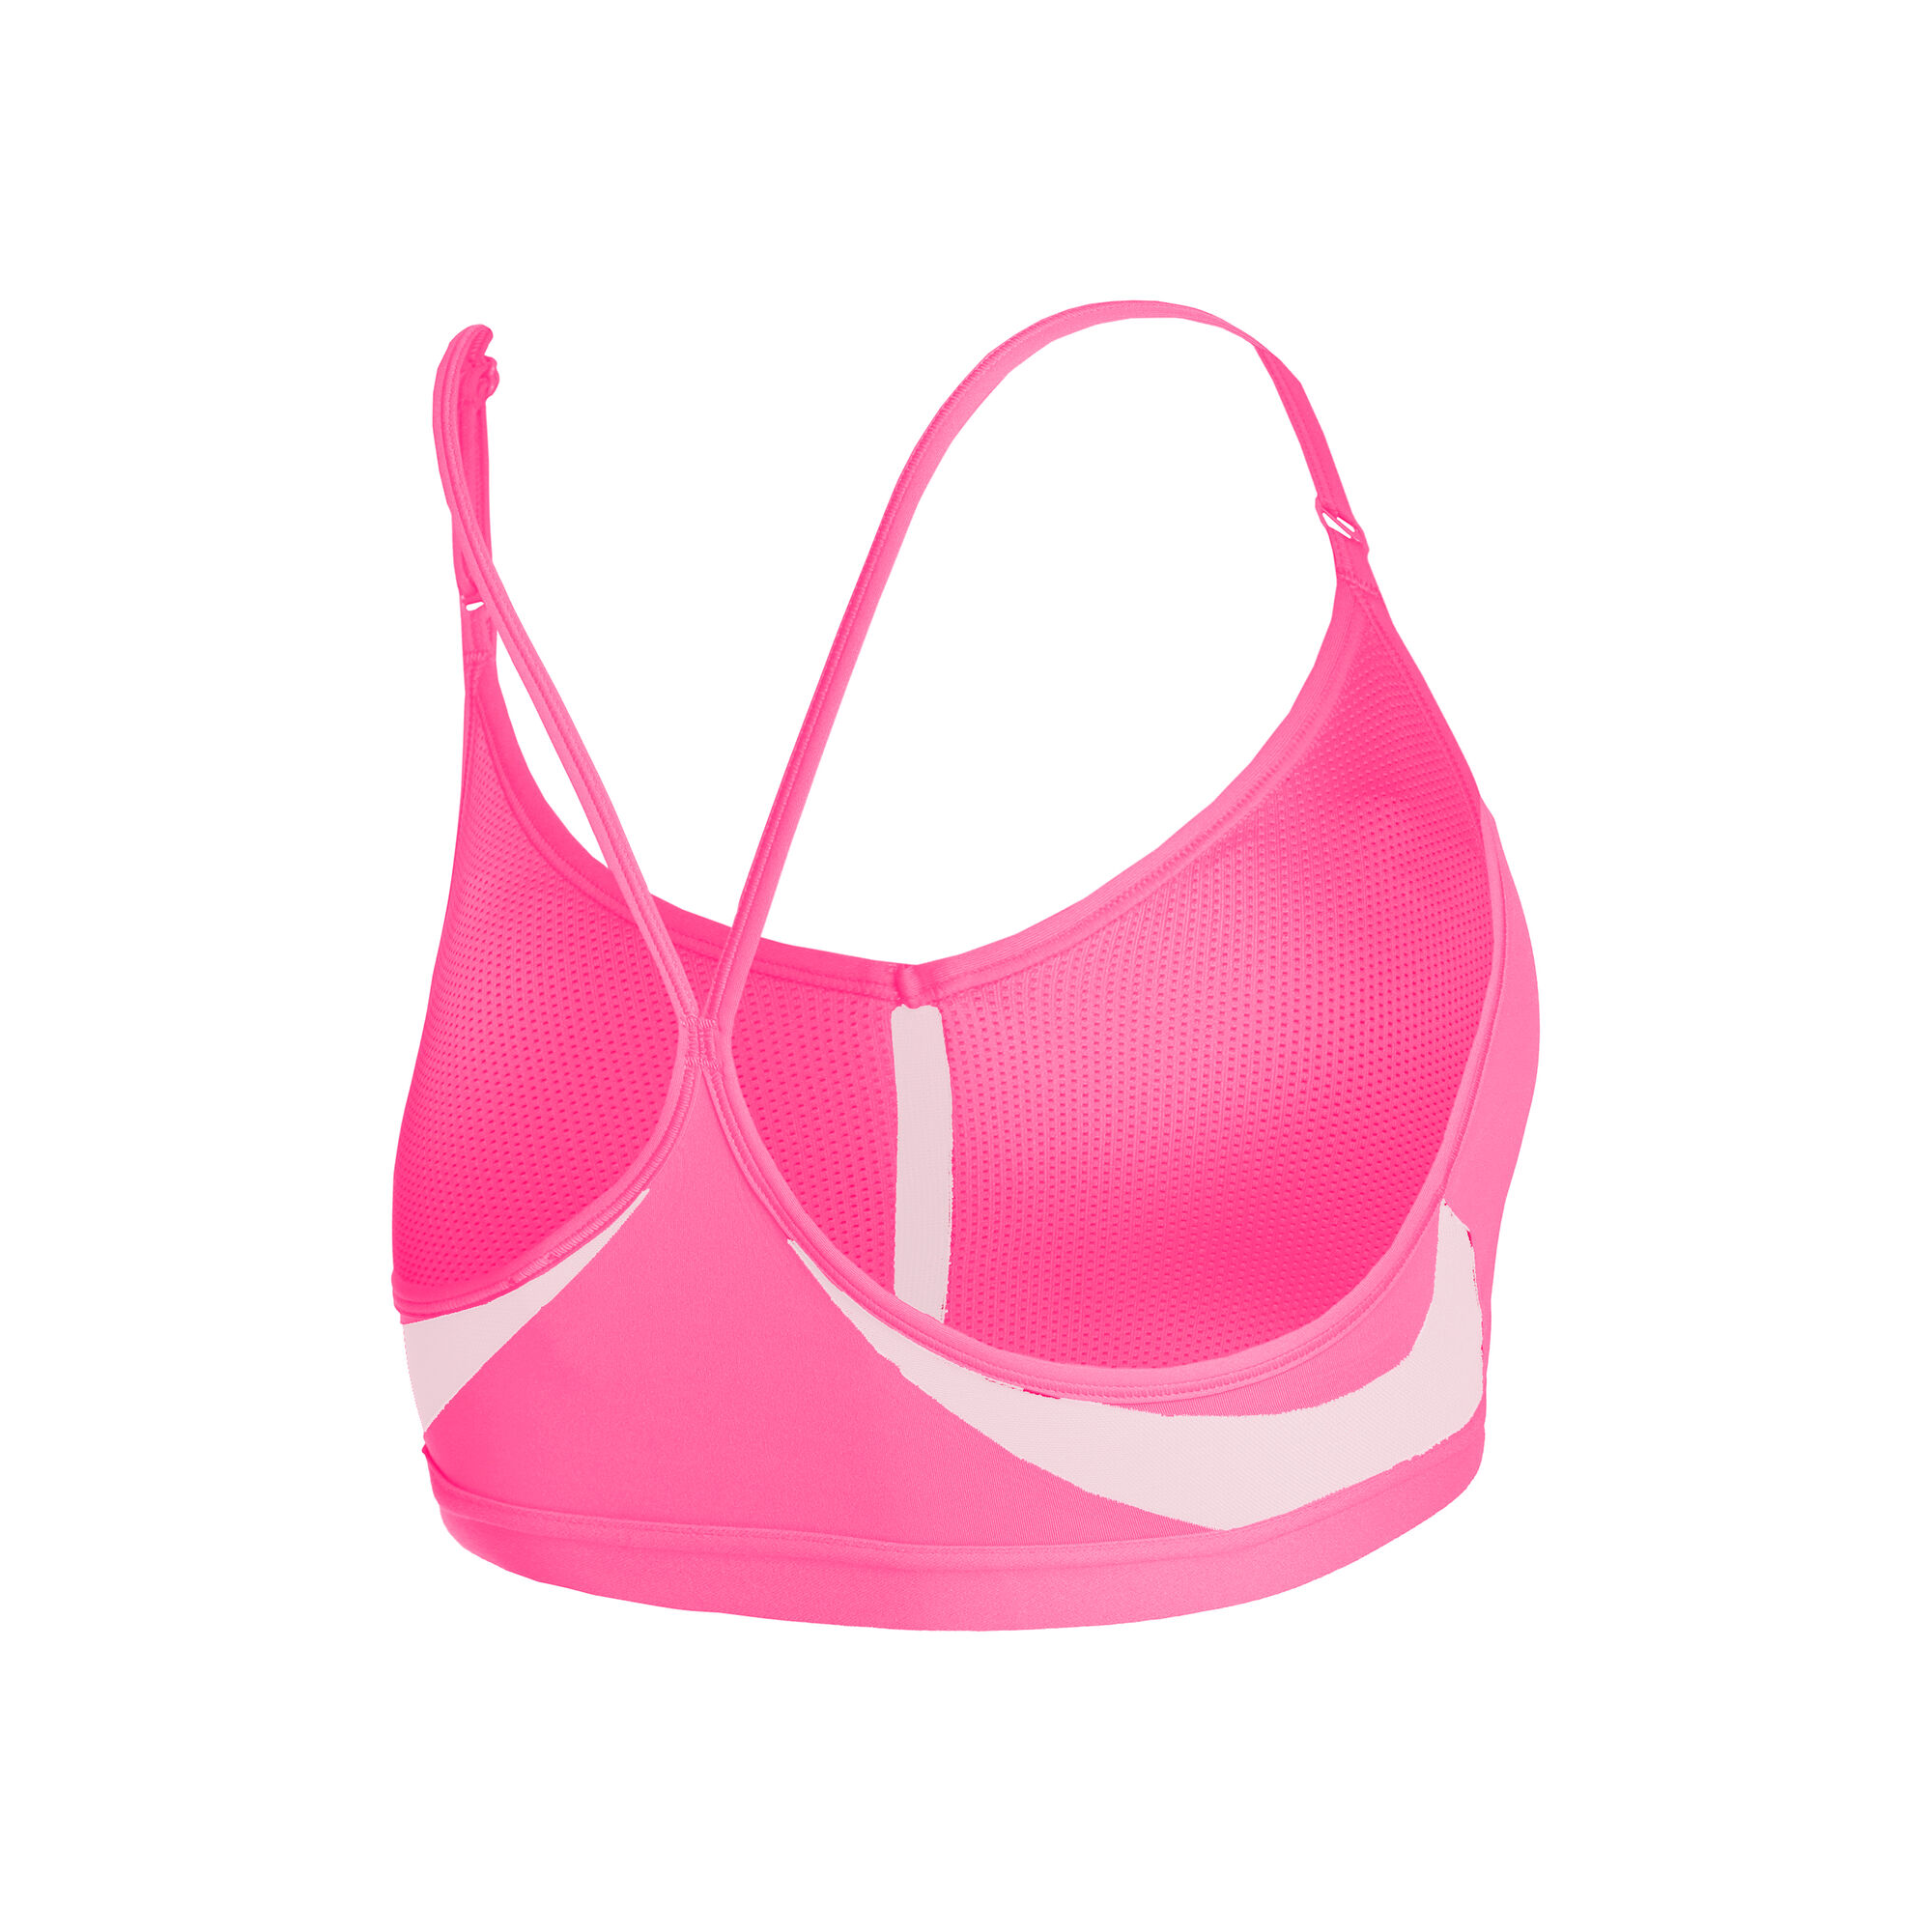 Buy Pink Sports Bras Online from Blissclub